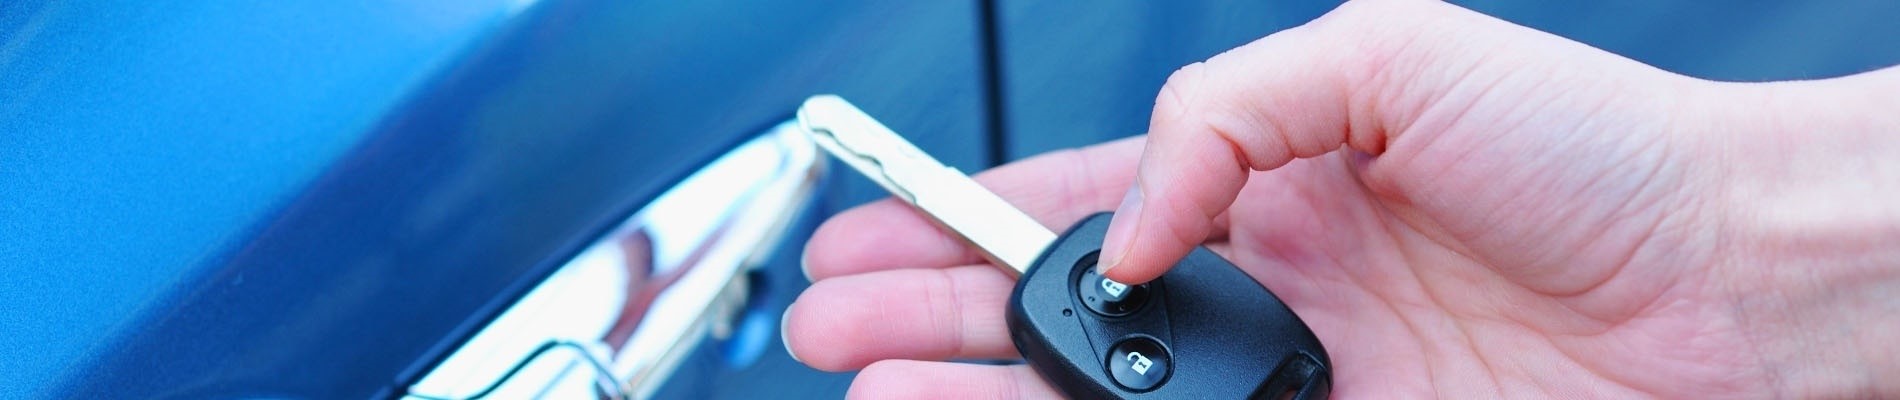 locksmith - Car key Made